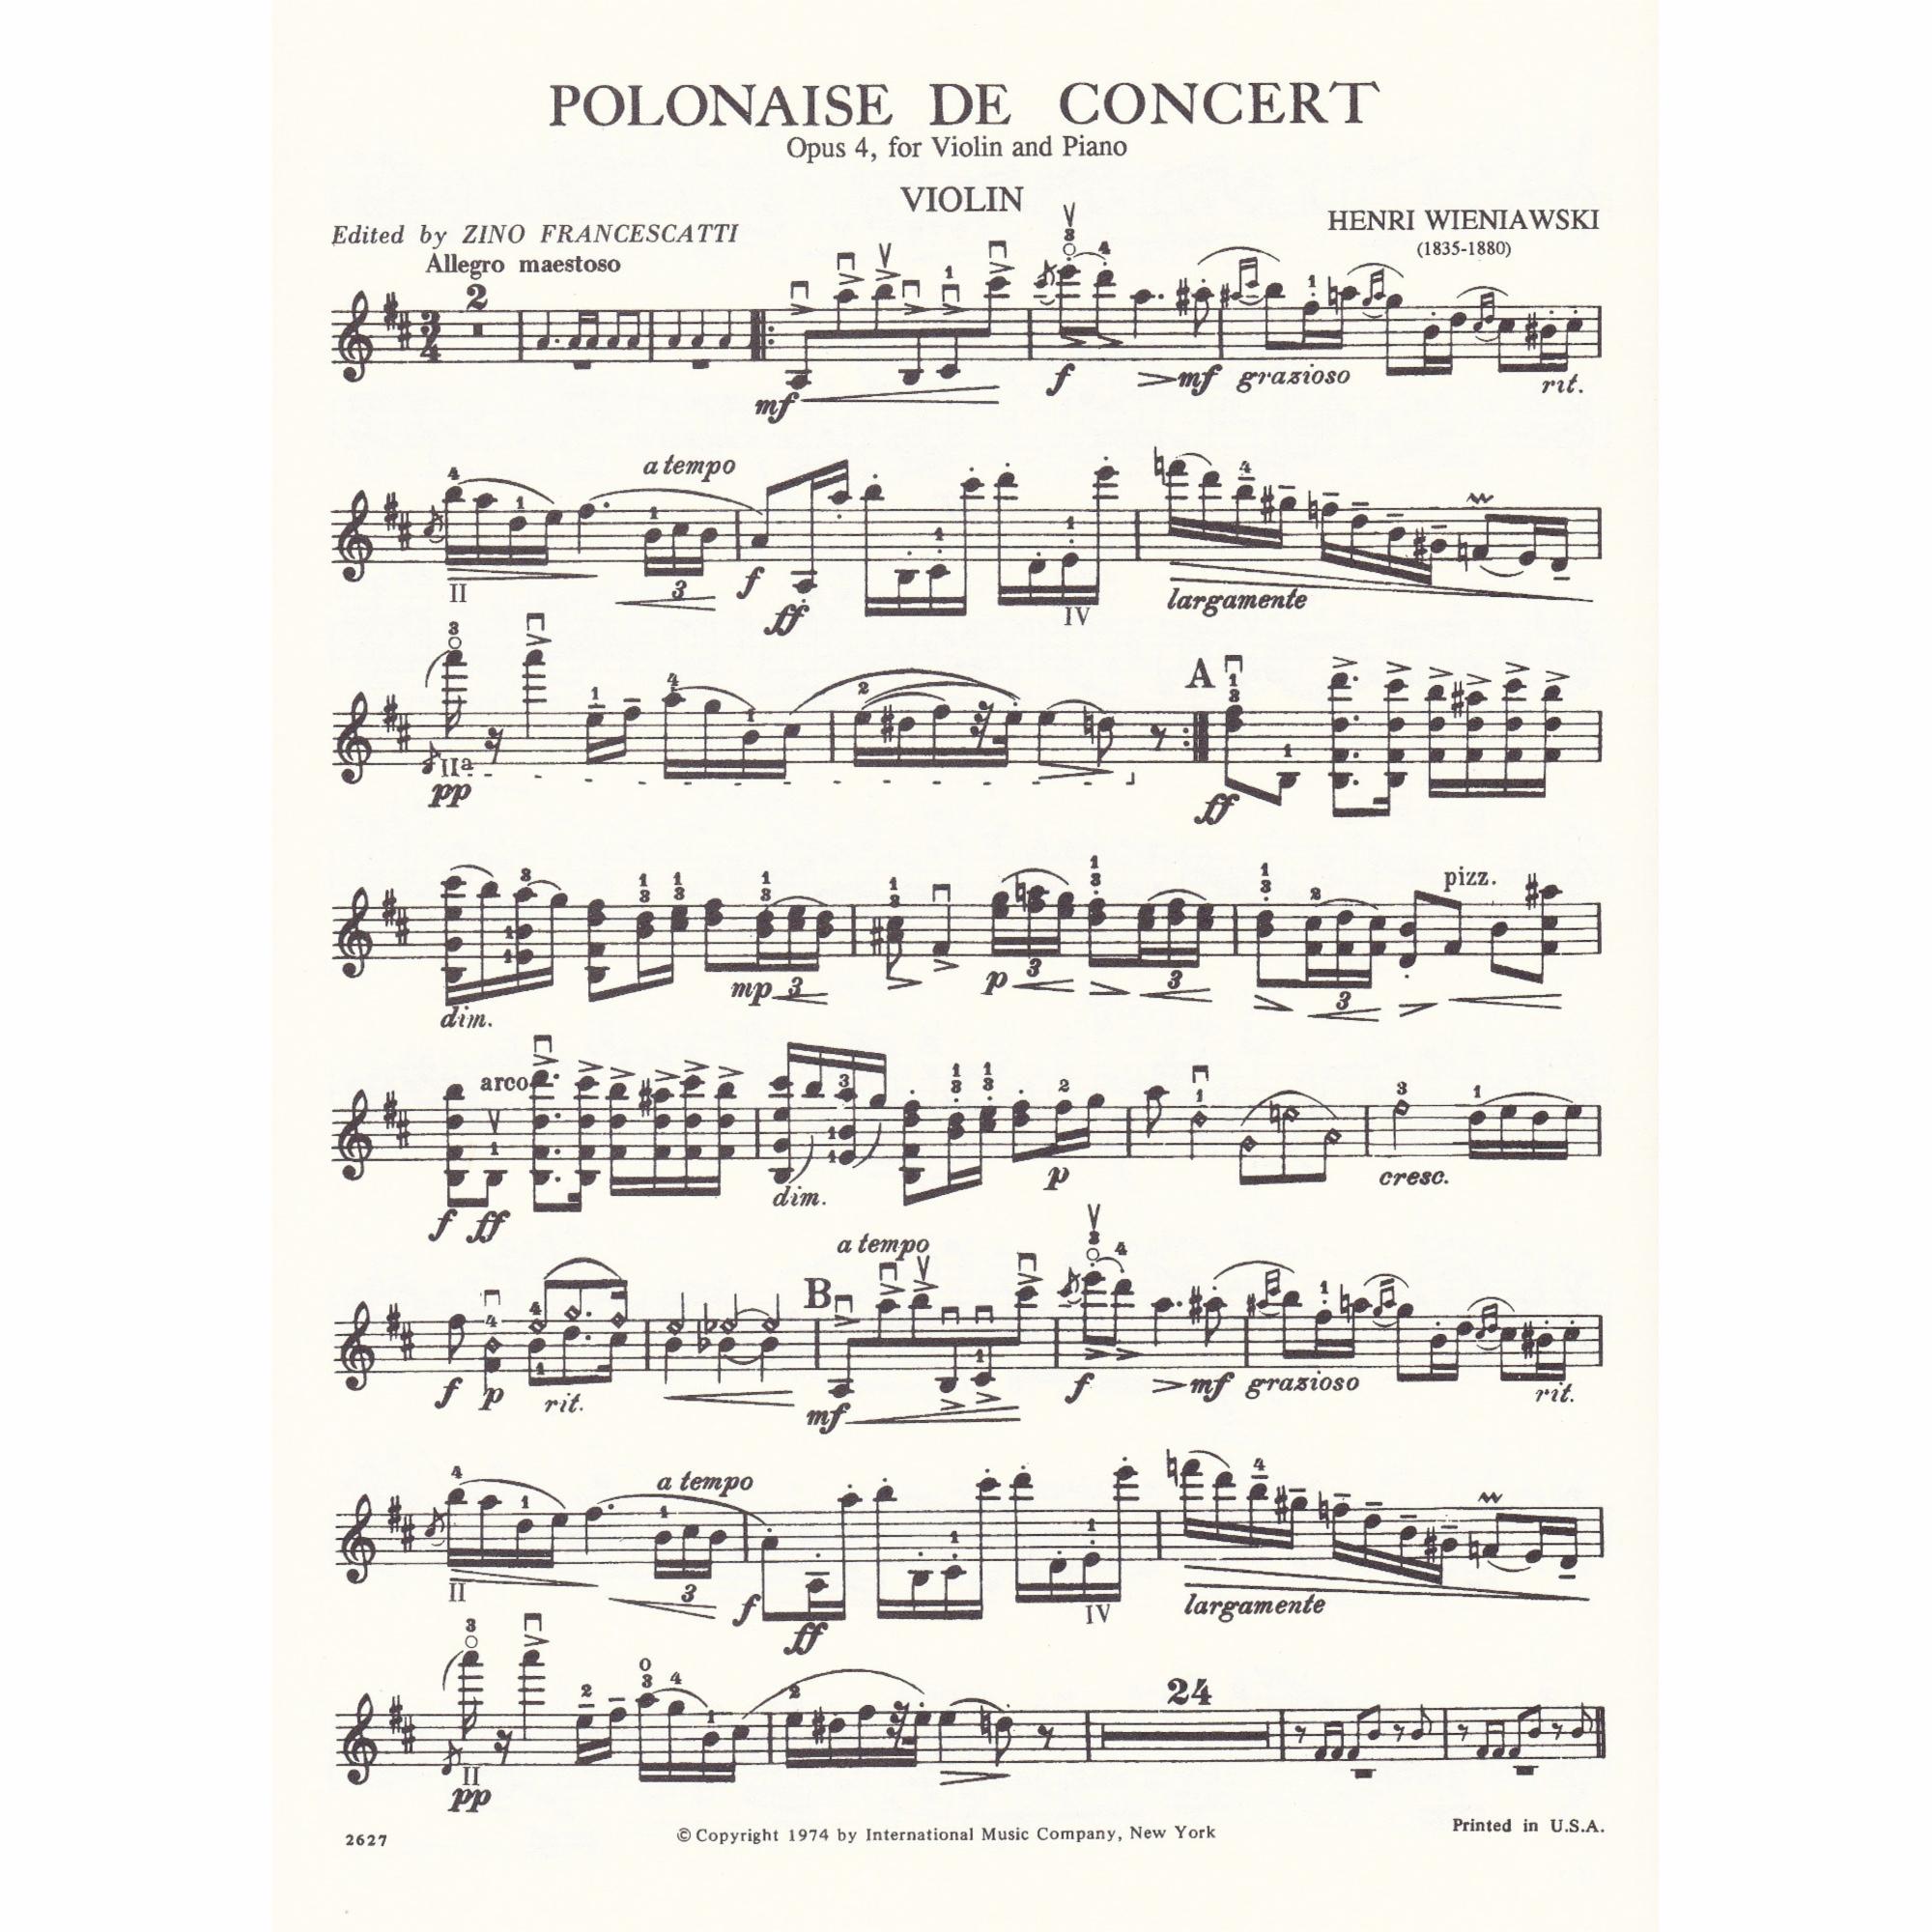 Polonaise de Concert in D Major, Op. 4